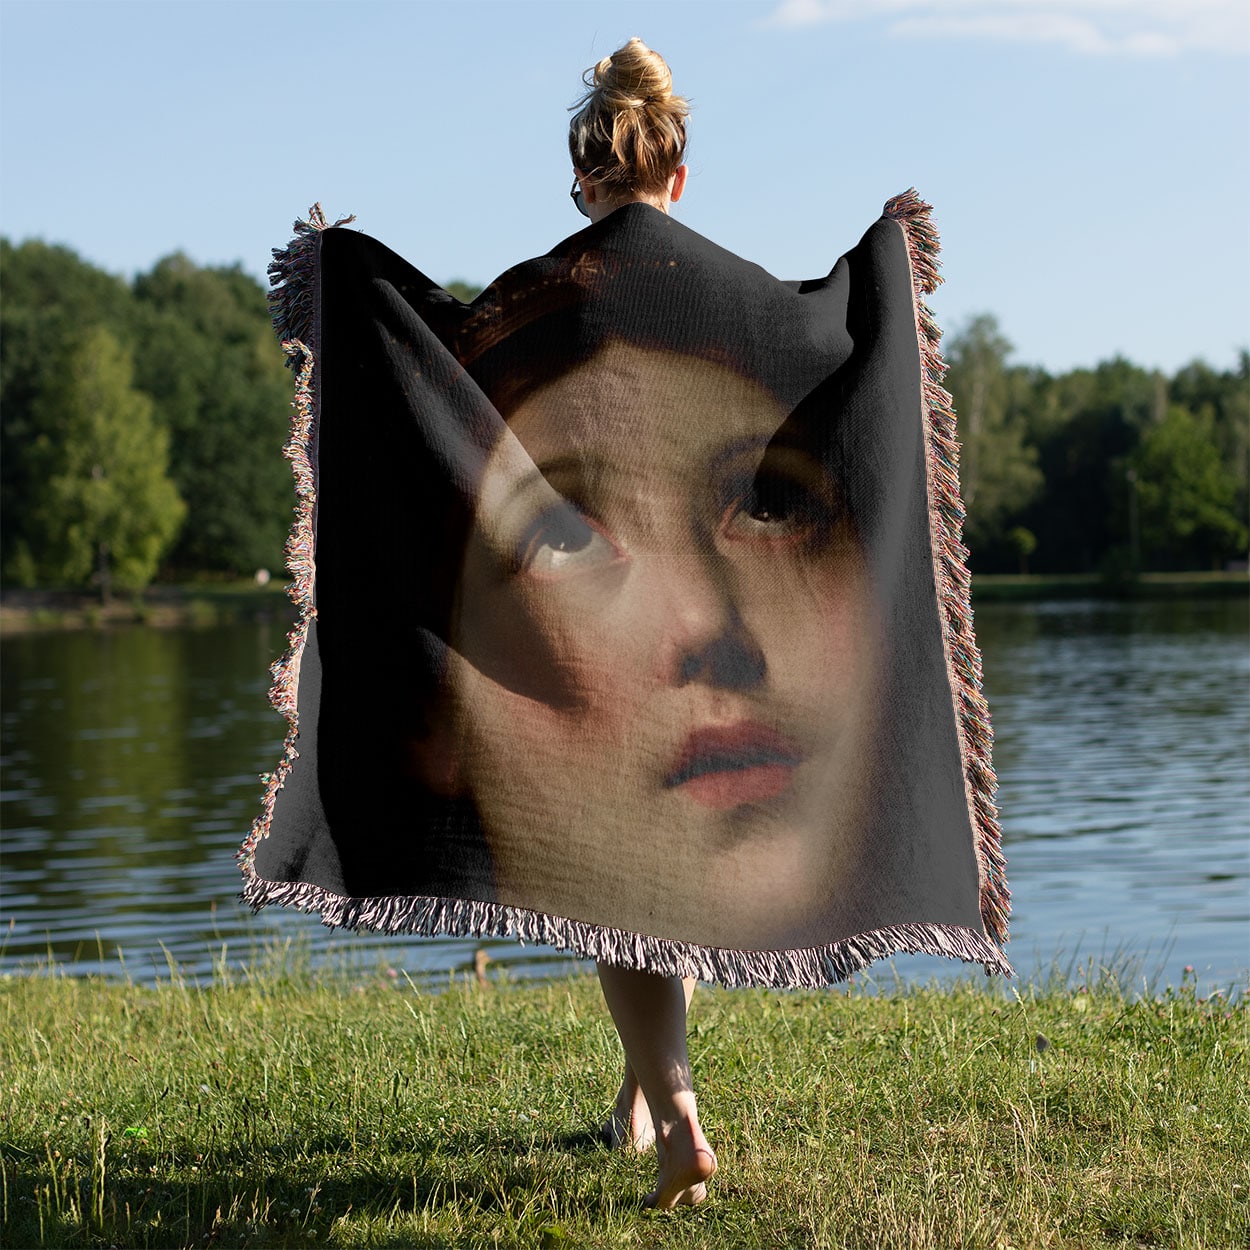 Renaissance Woven Blanket Held on a Woman's Back Outside